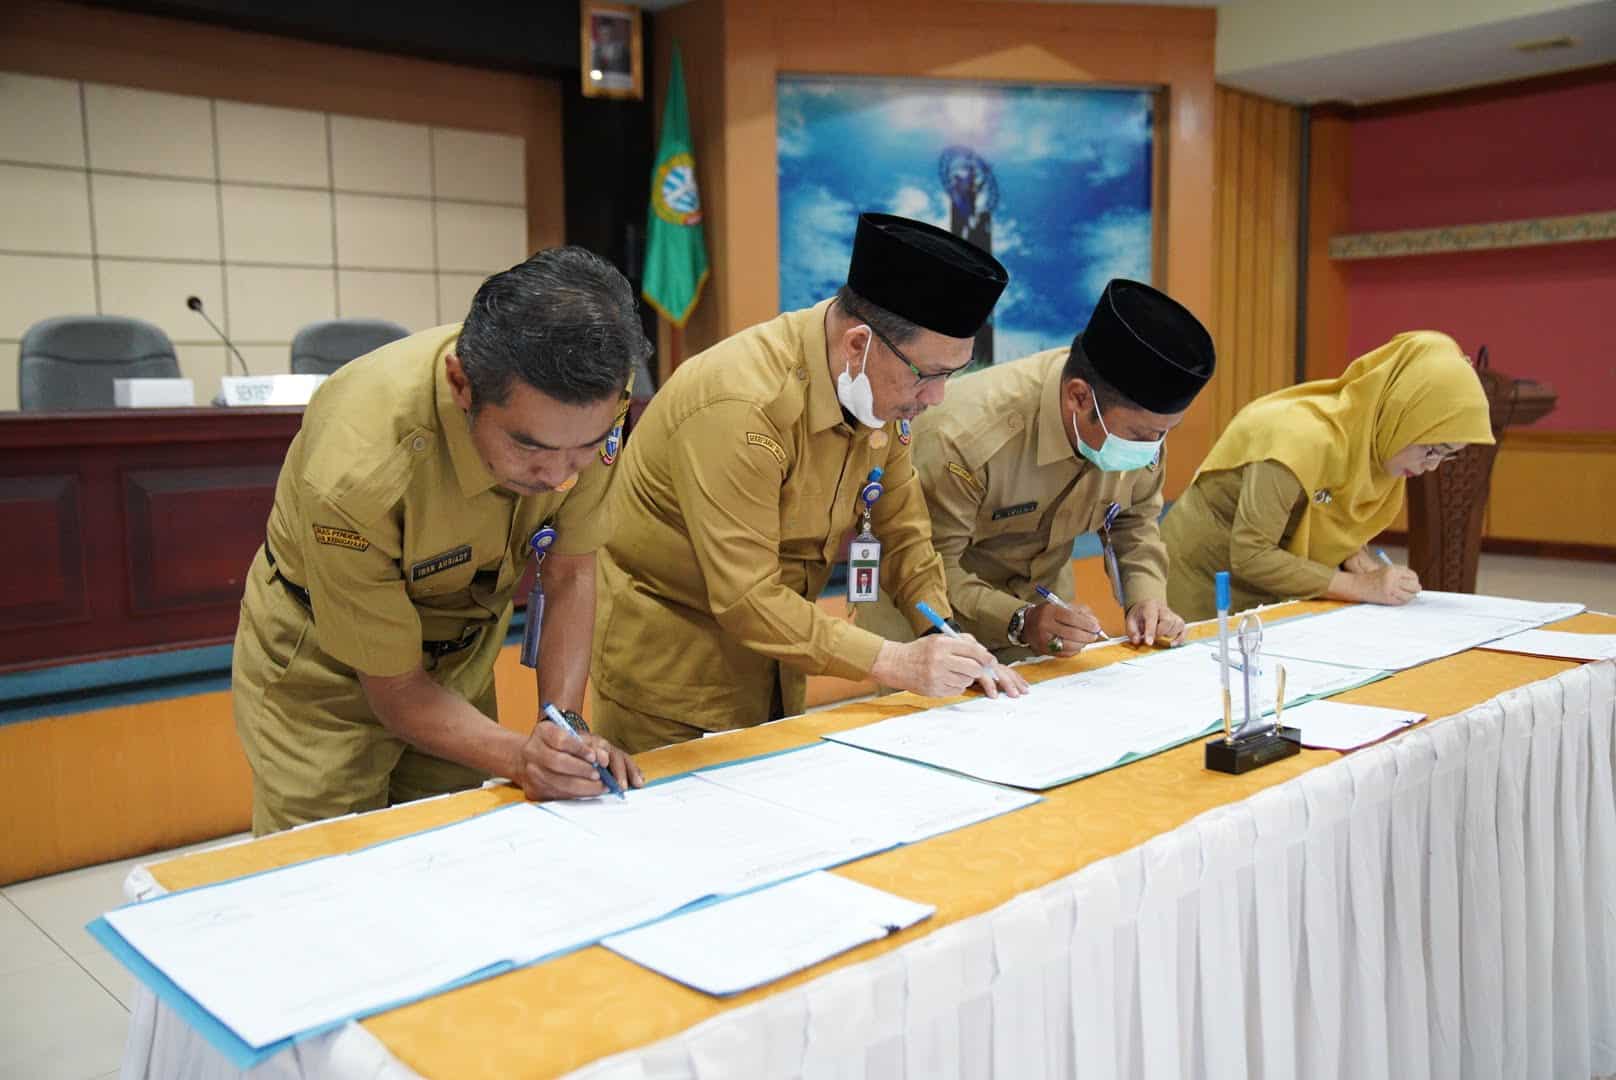 Sekretaris Daerah Kota Pontianak, Mulyadi beserta pejabat di lingkungan Sekretariat Daerah Kota Pontianak menandatangani perjanjian kinerja dan pakta integritas. (Foto: Prokopim For KalbarOnline.com)